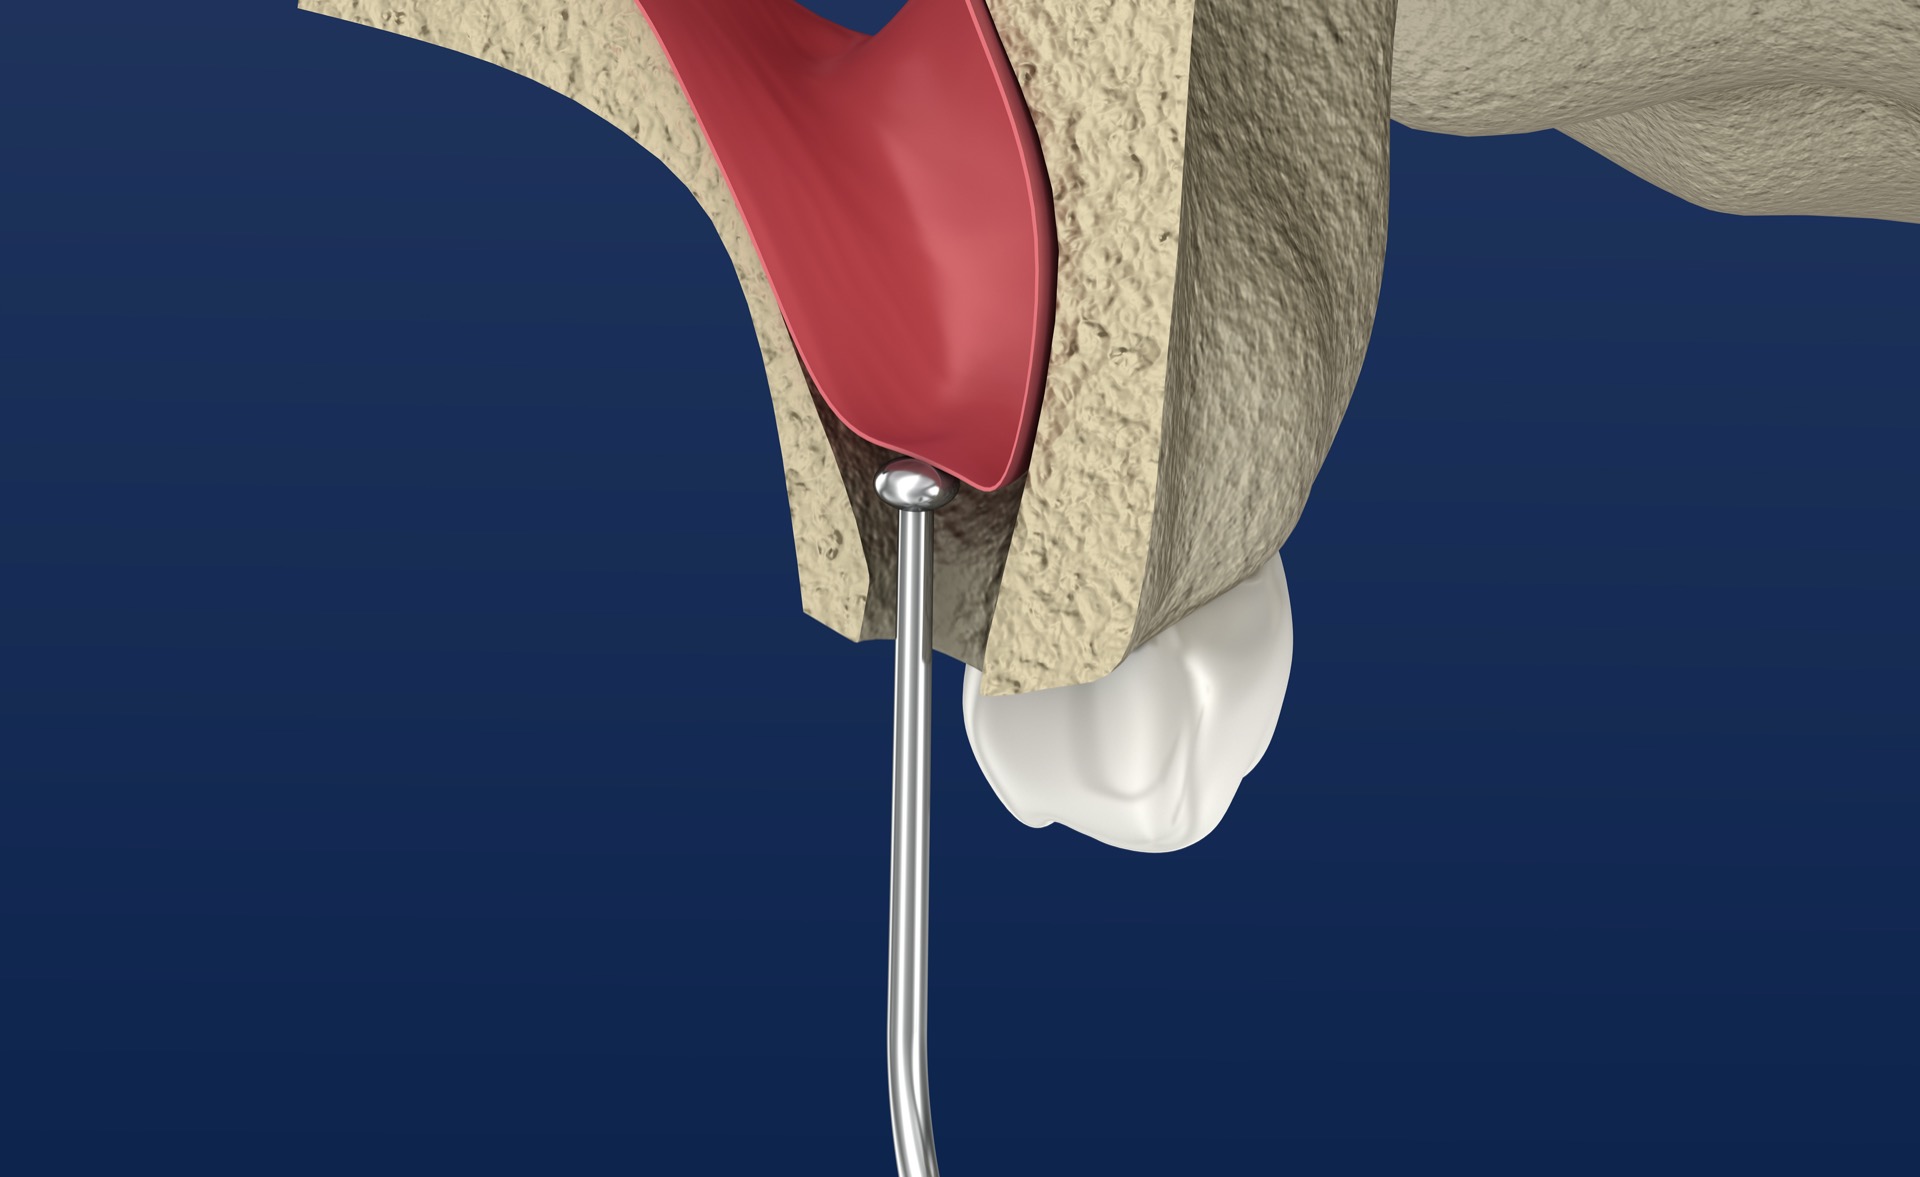 Zirconia Implants in Sinus Augmentation Procedures